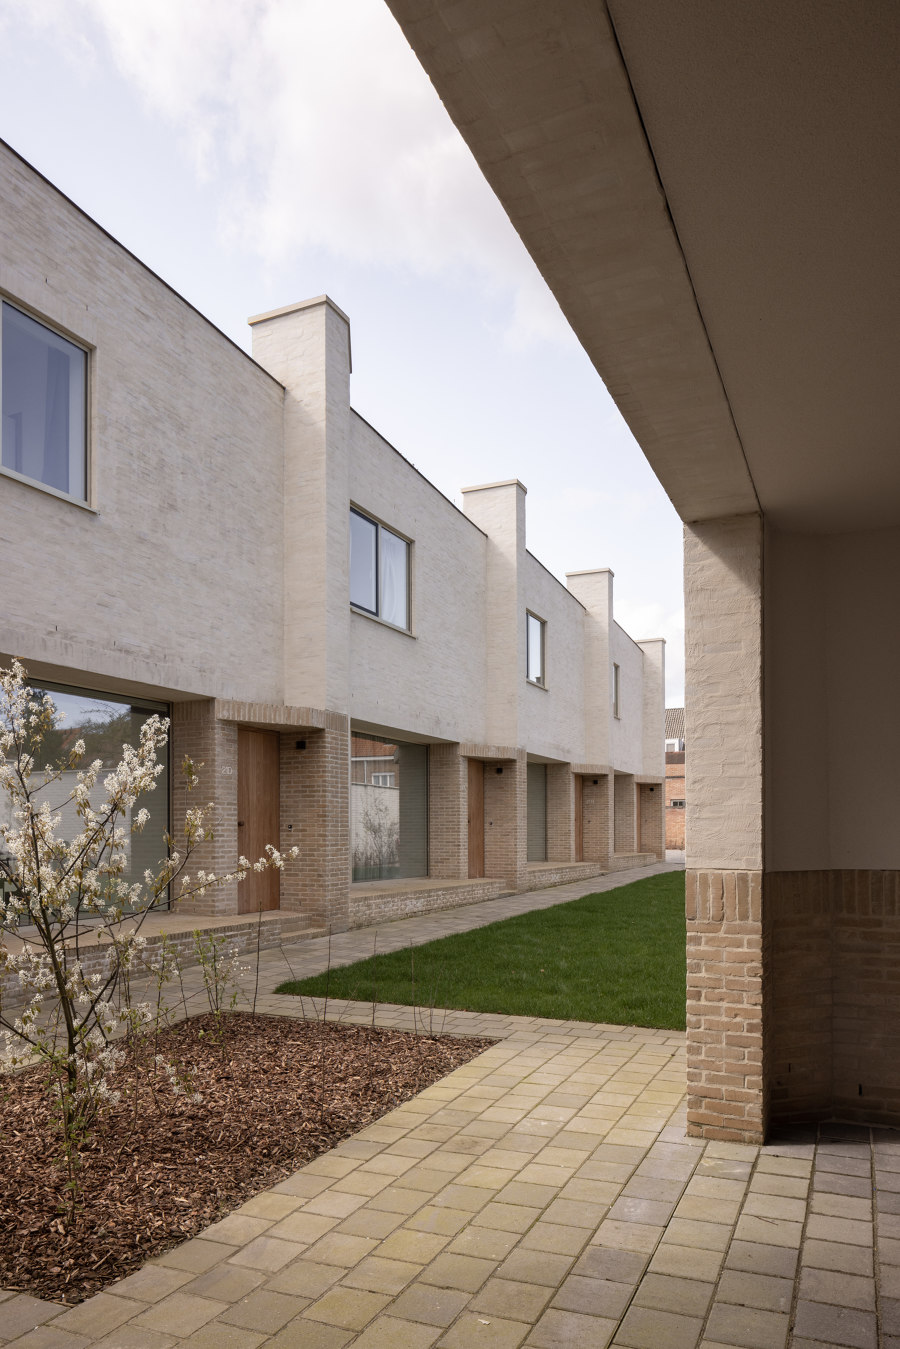 Ten Boomgaard Housing by WE-S architecten | Apartment blocks